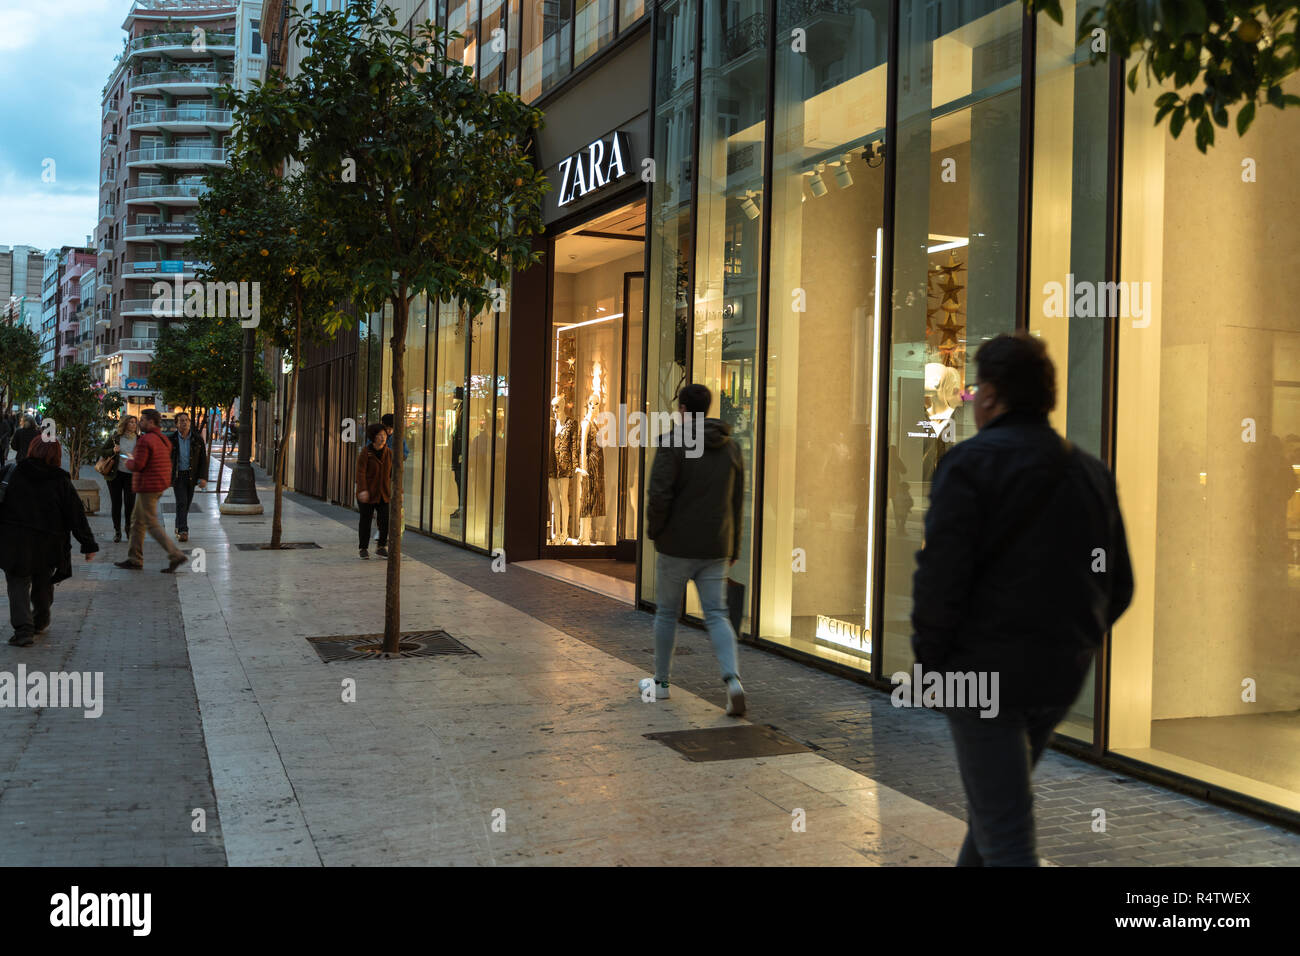 Valencia, Spagna - 25 Novembre 2018: Zara negozio in Valencia. Zara è uno  spagnolo di capi di abbigliamento e accessori rivenditore Zara negozio. La  gente camminare dentro e fuori Foto stock - Alamy